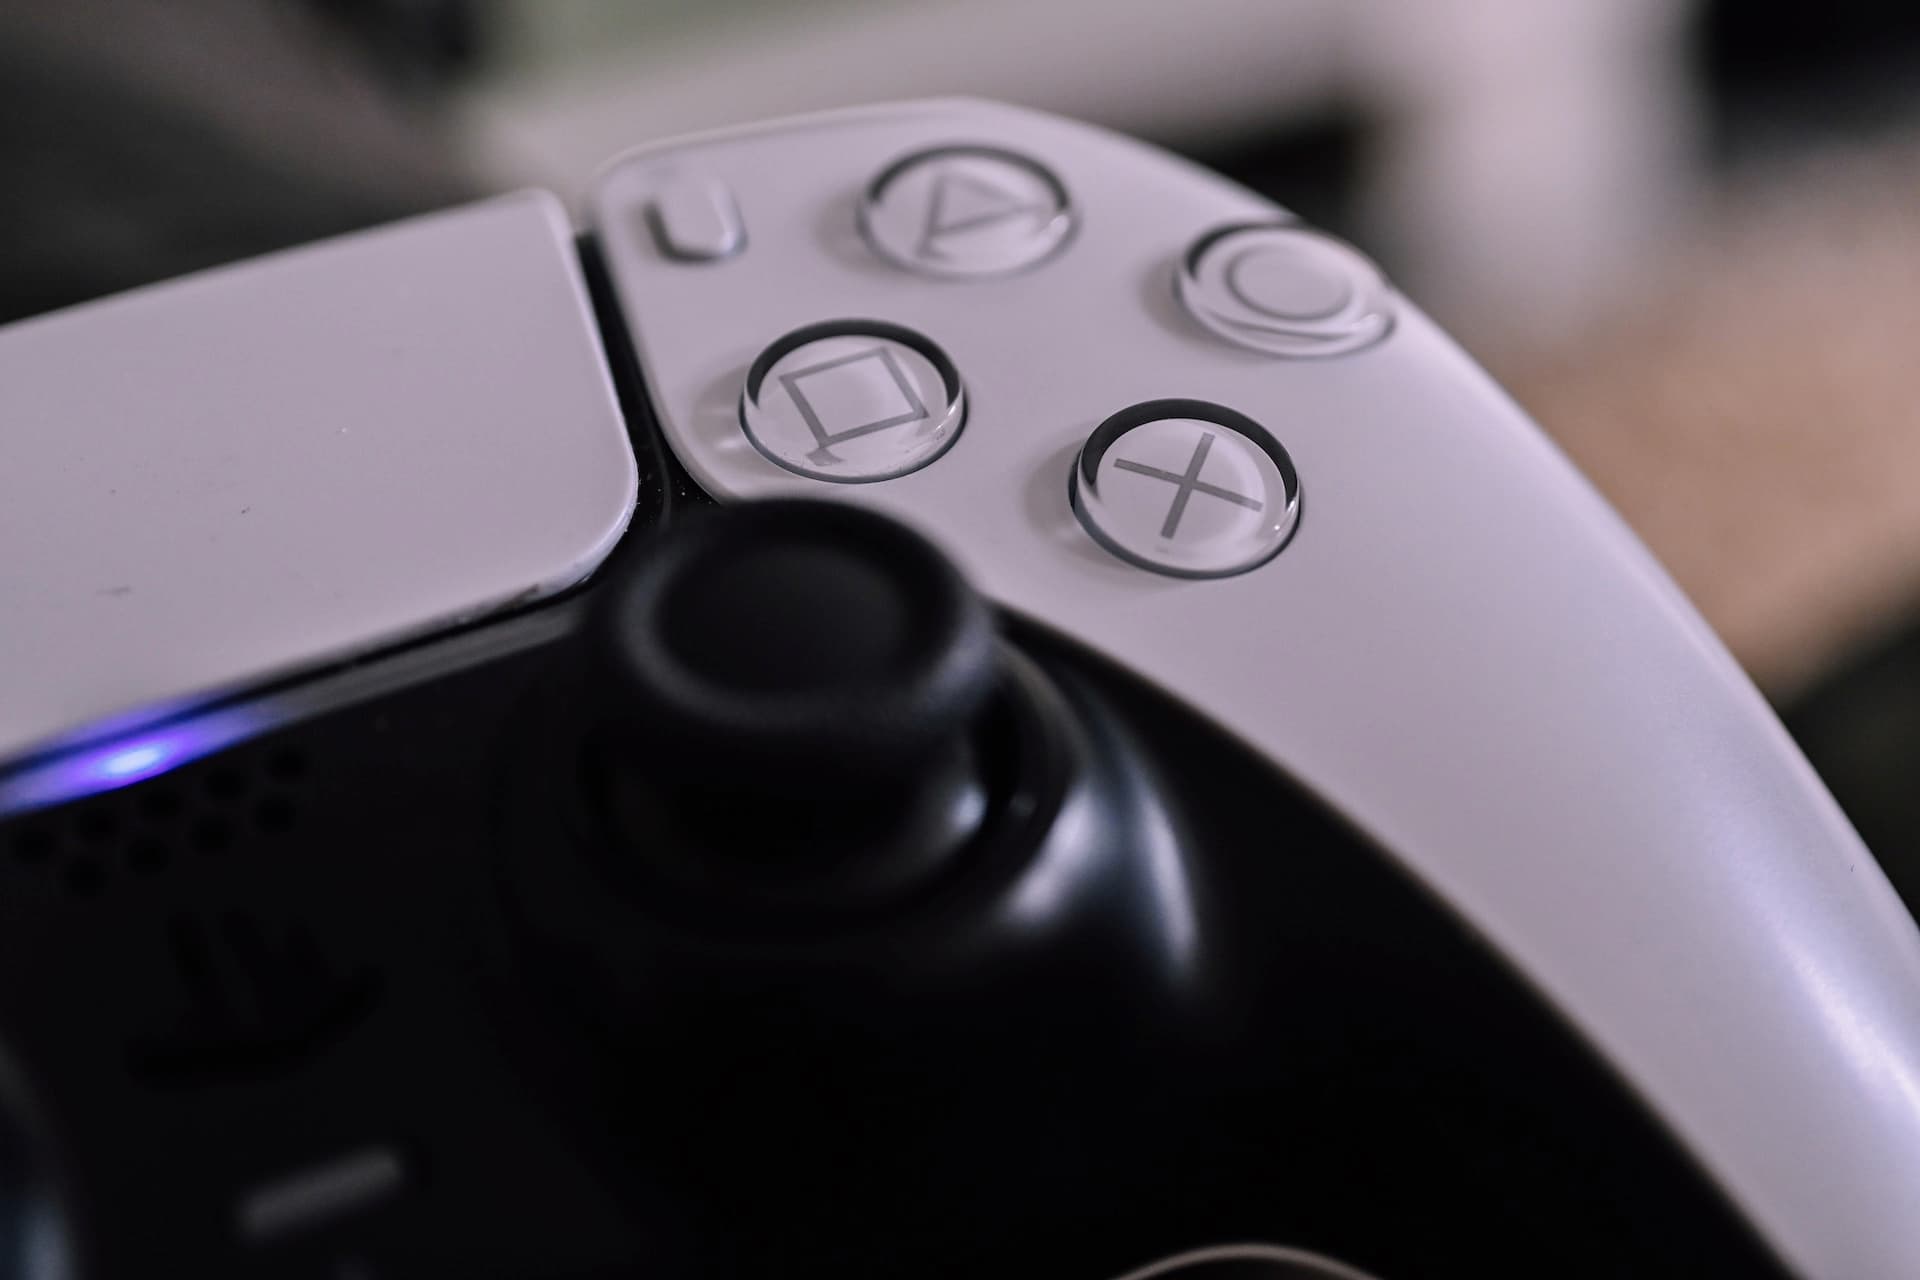 PlayStation Store divulga os jogos mais baixados em maio de 2023 no Brasil  